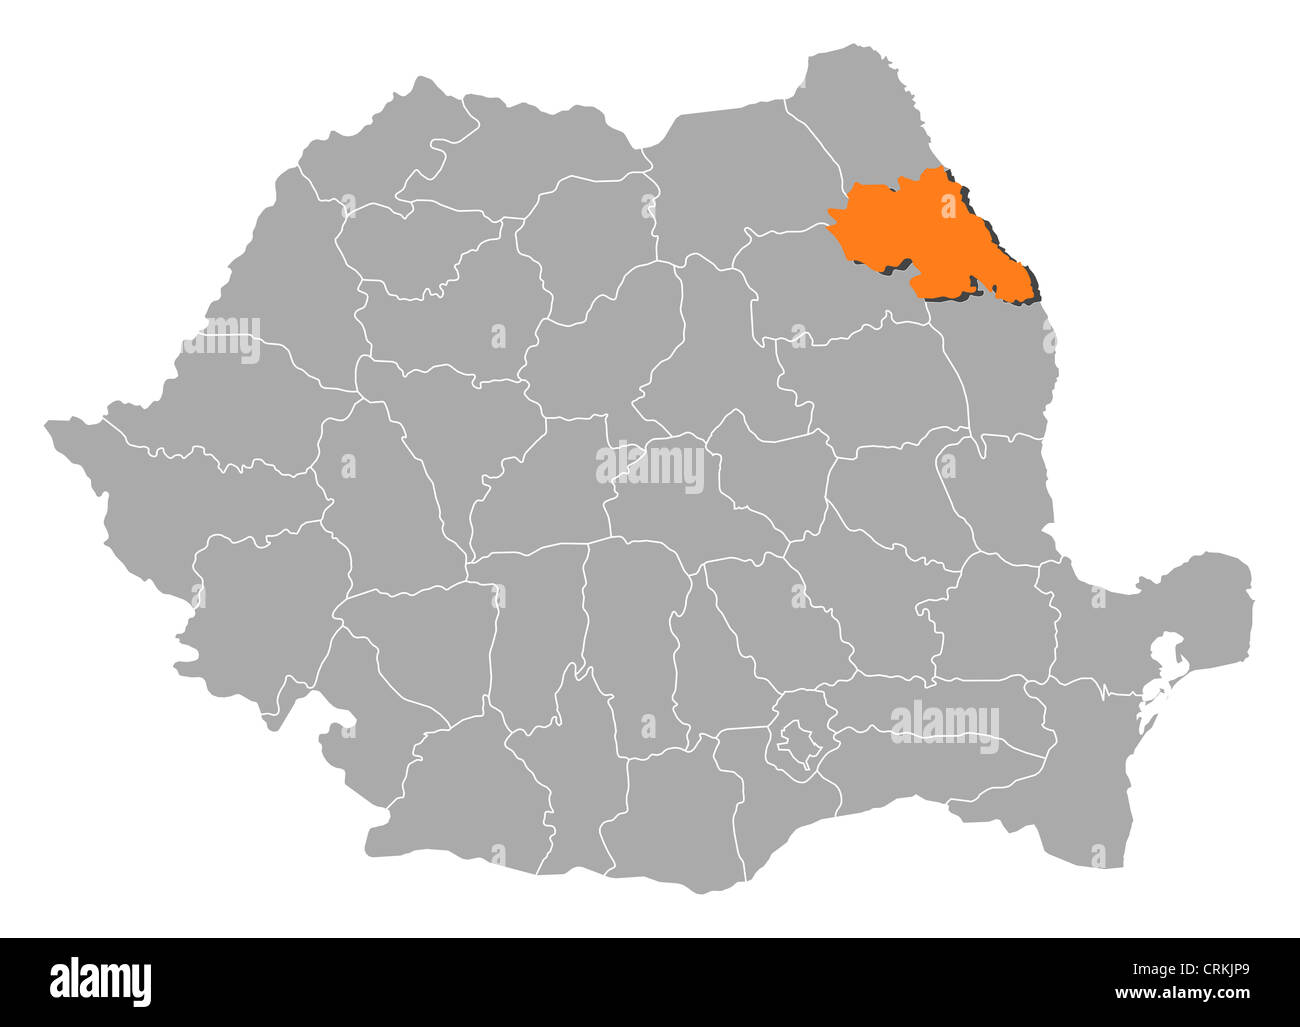 Mappa politica della Romania con le varie contee in cui Iasi è evidenziata. Foto Stock